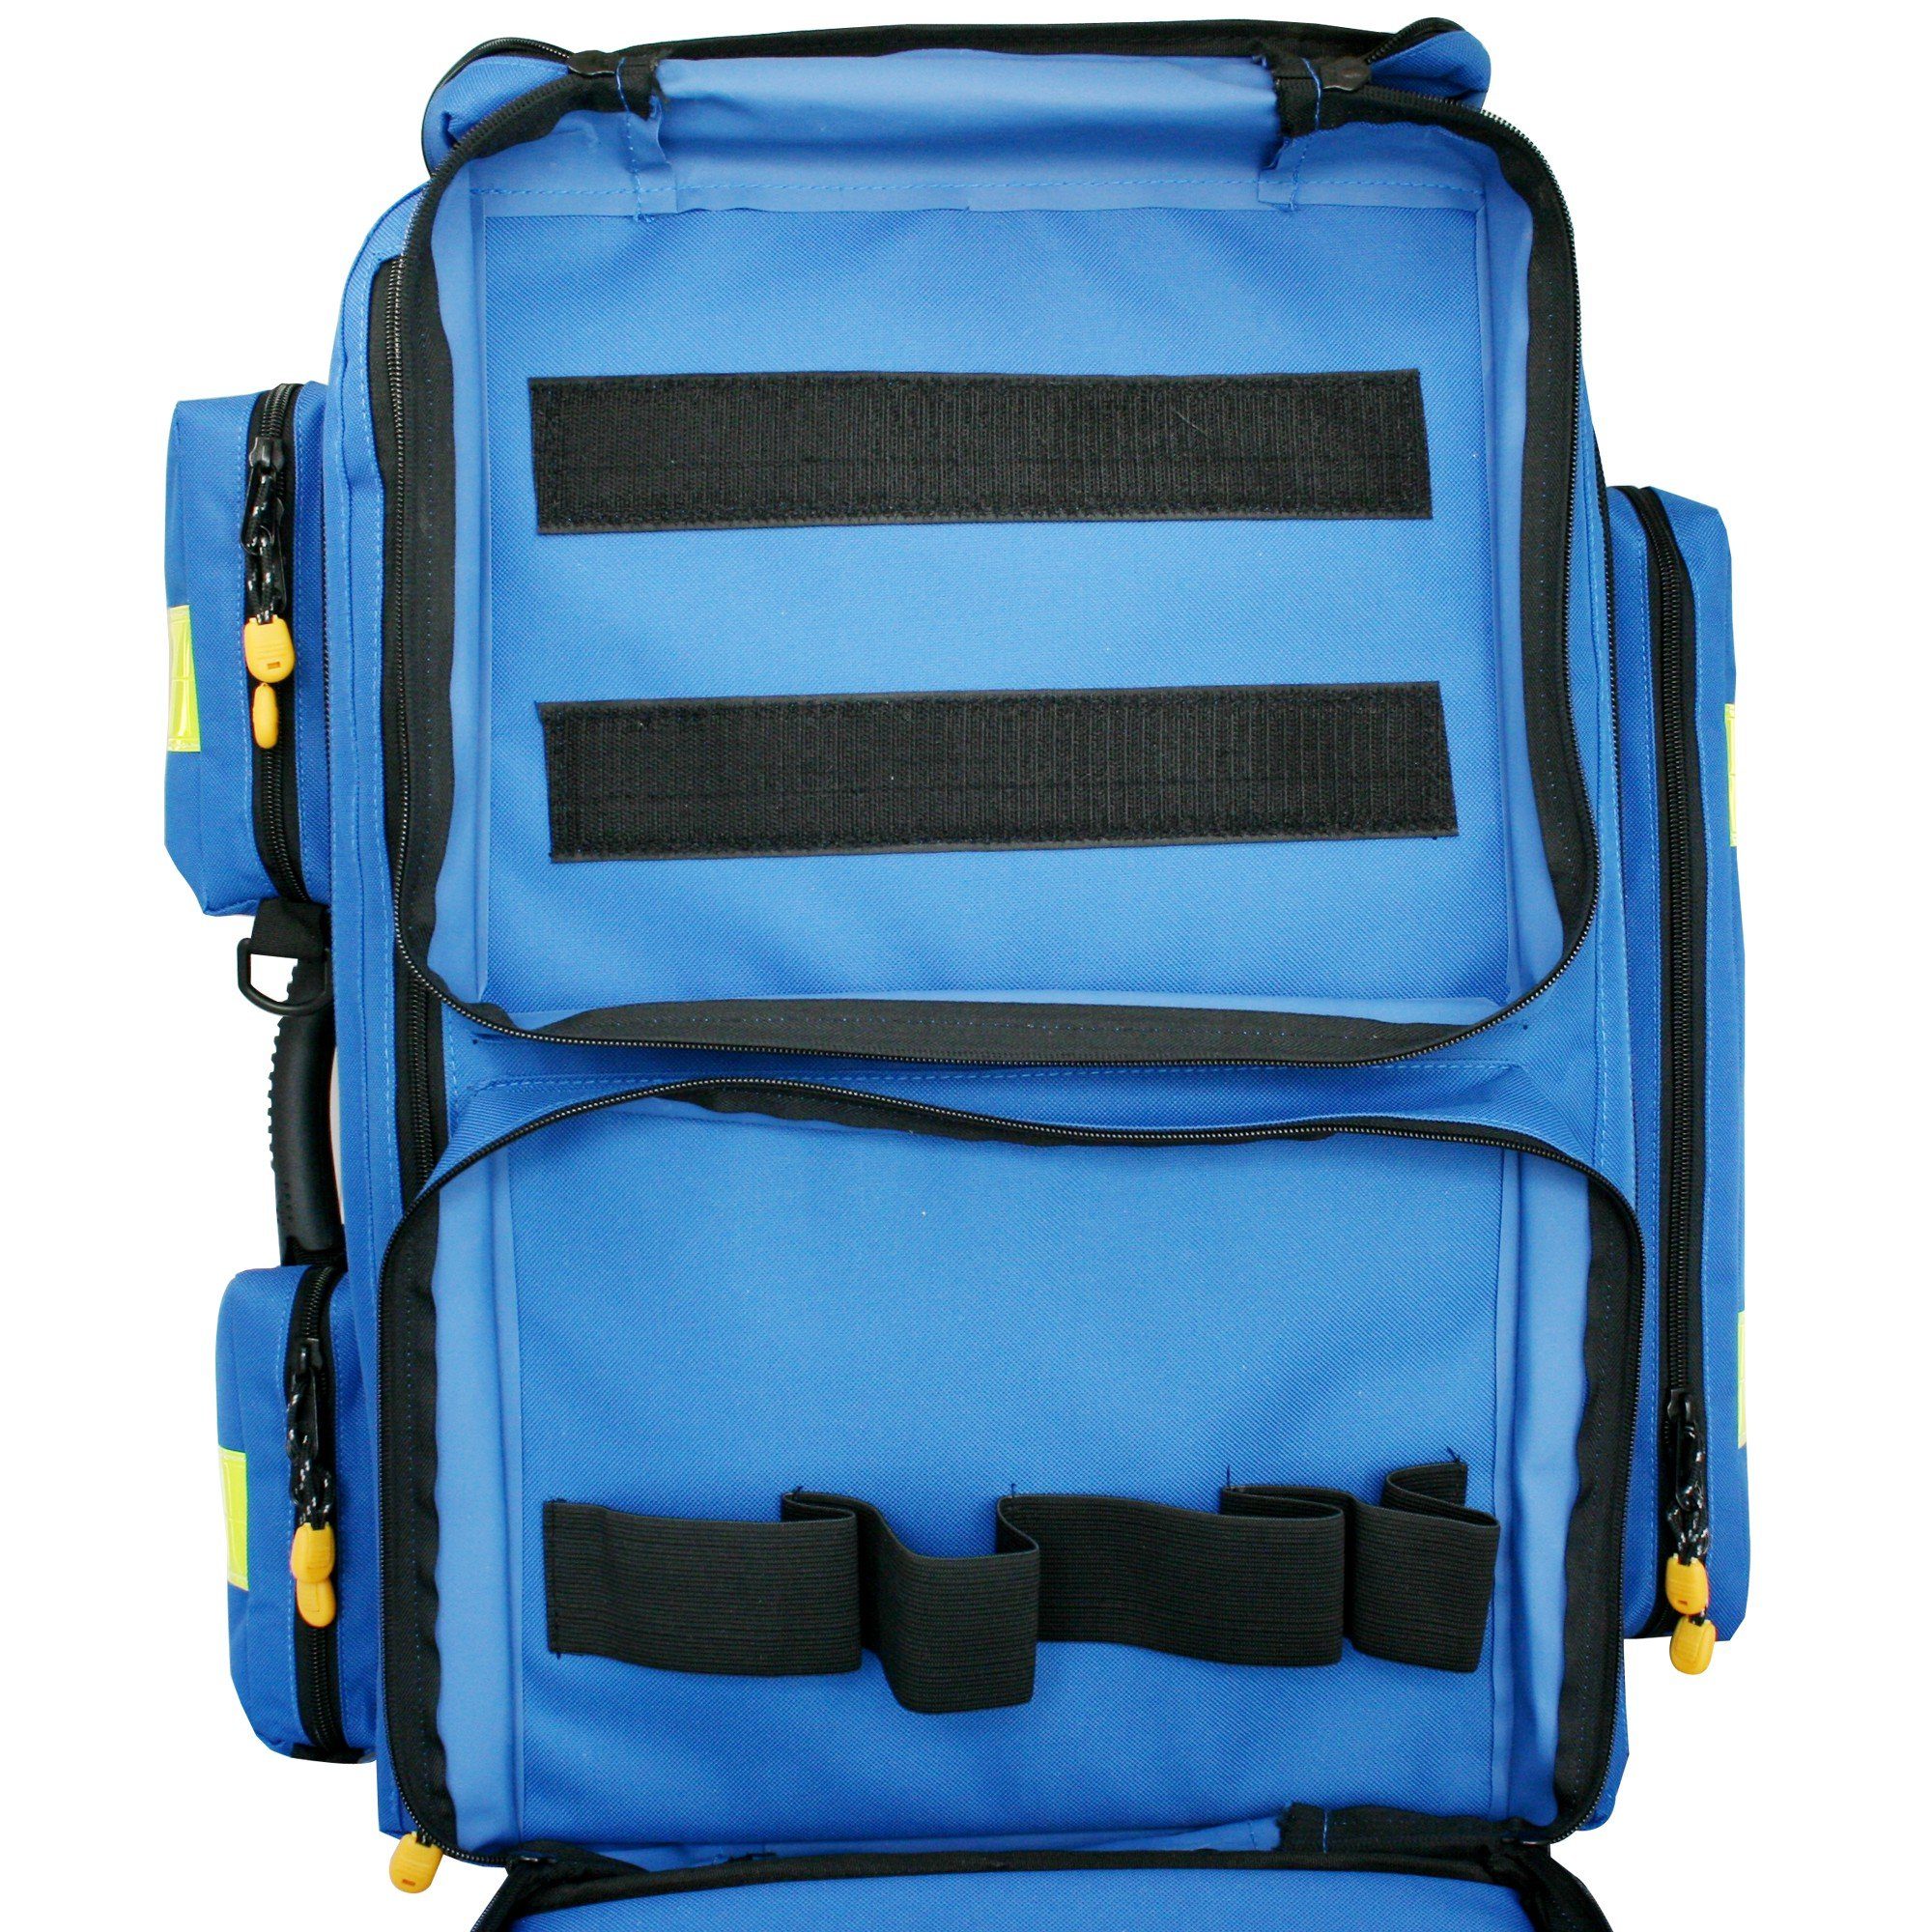 Nylon blau XL Arzttasche SANISMART Notfallrucksack gefüllt mit 13157 MEDICUS